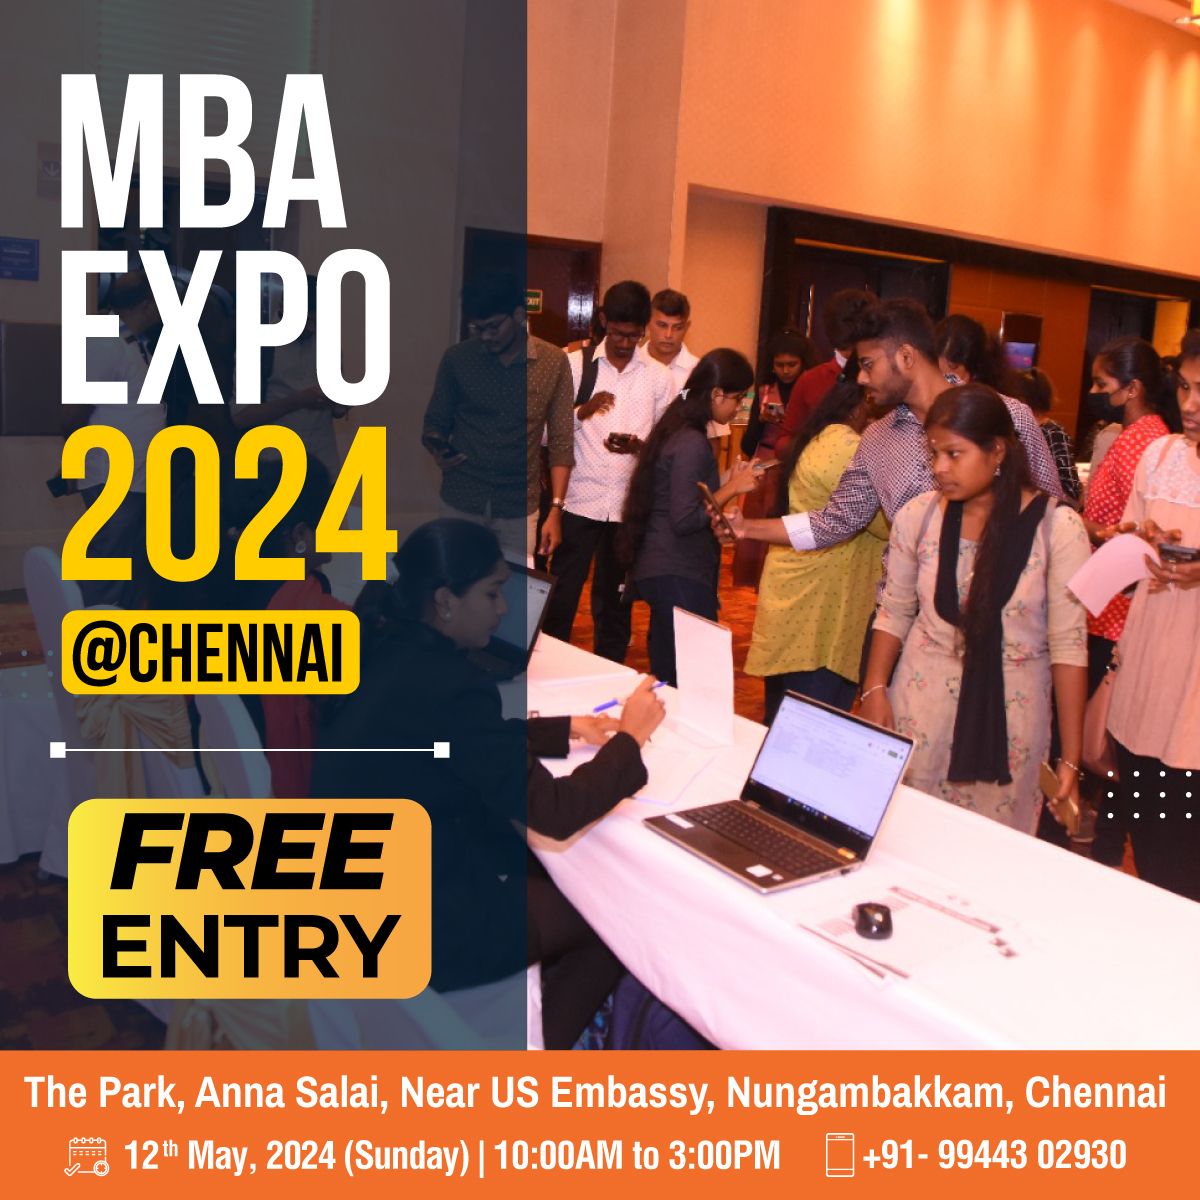 Chennai MBA Expo 2024 